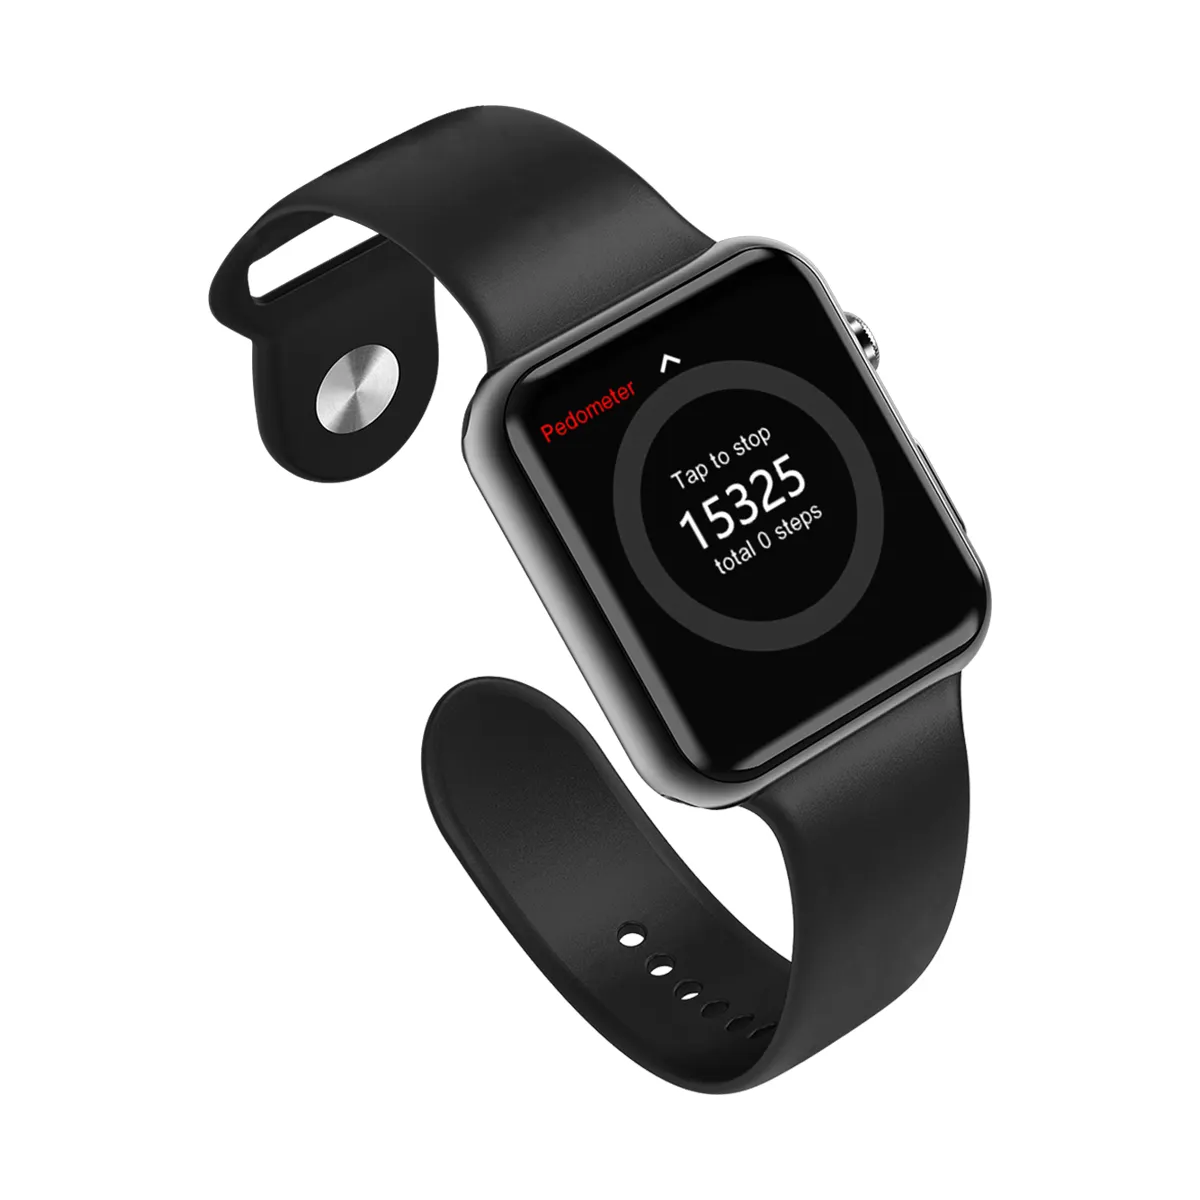 Smartwatch i2s à prova d'água, smartwatch esportivo amazon top seller com pulseira e monitoramento de frequência cardíaca, à prova d' água e preço baixo, 2021